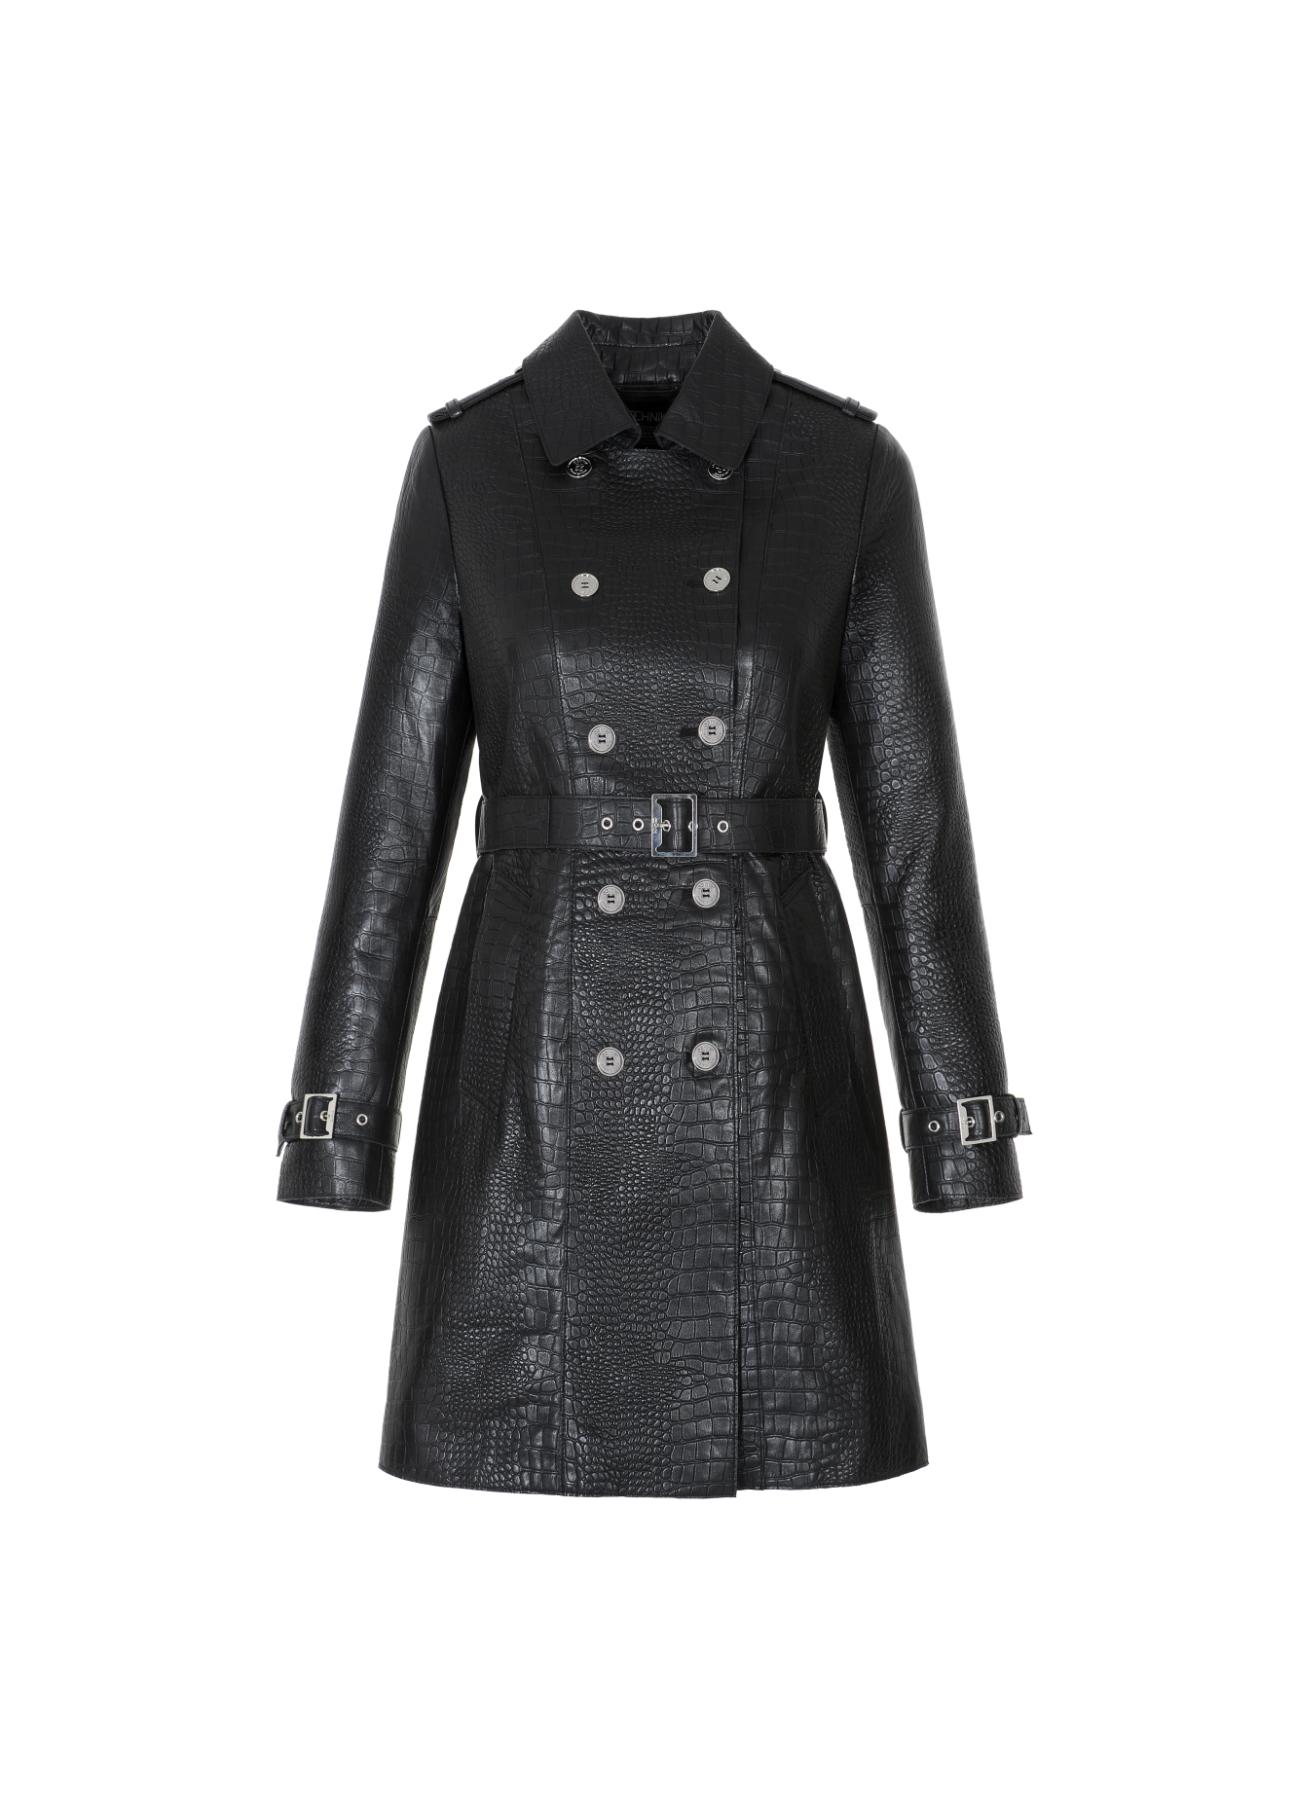 Czarny skórzany płaszcz damski KURDS-0332-1155(W22)